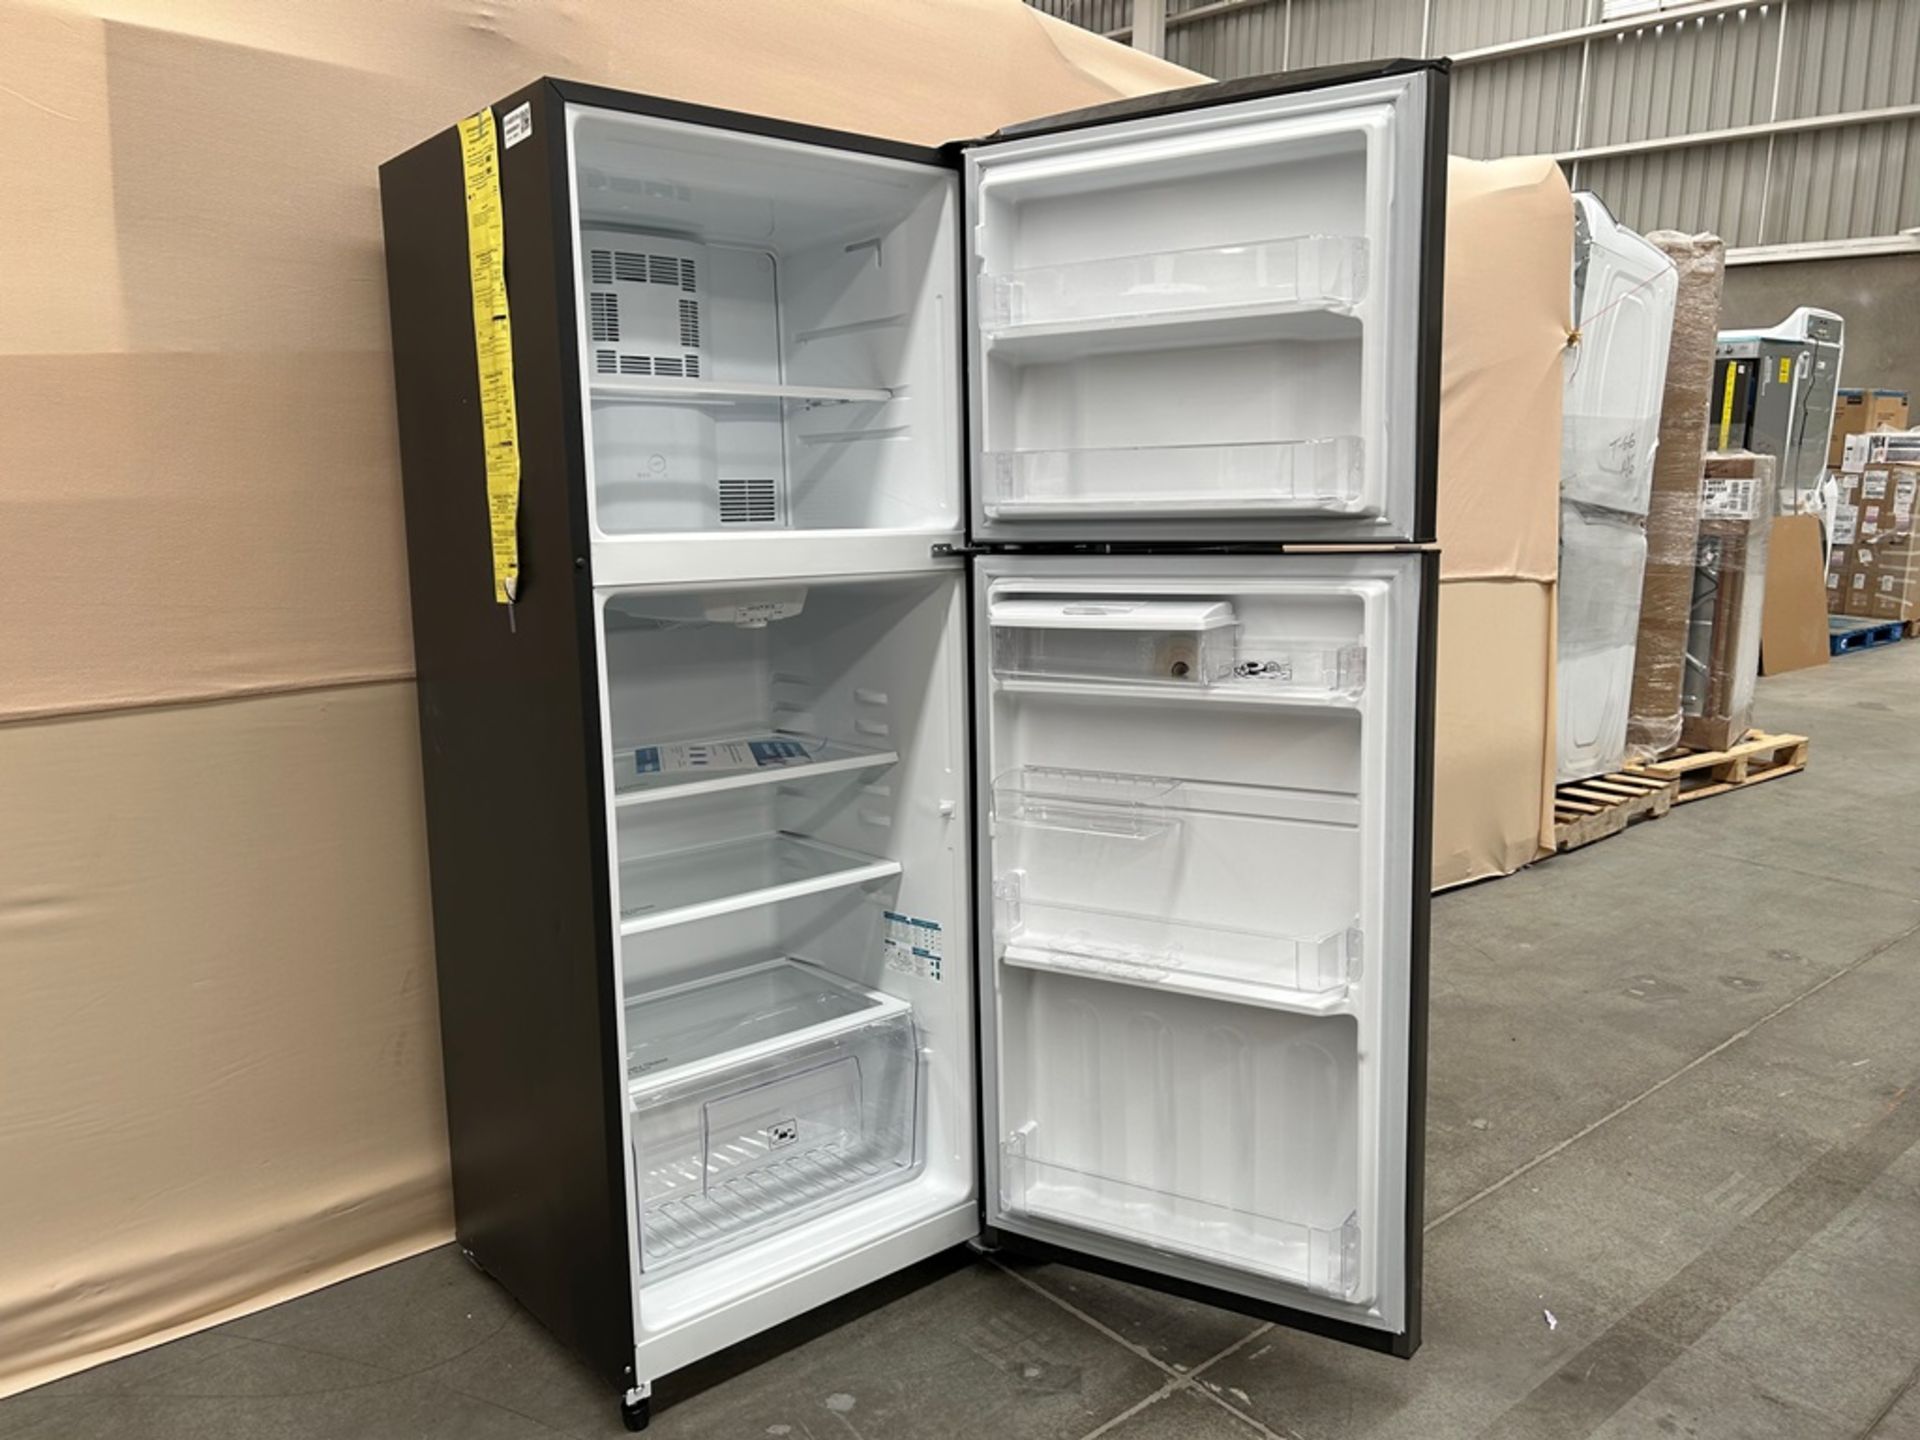 Lote de 2 refrigeradores contiene: Refrigerador con dispensador de agua Marca MABE, Modelo RME360FD - Image 4 of 6